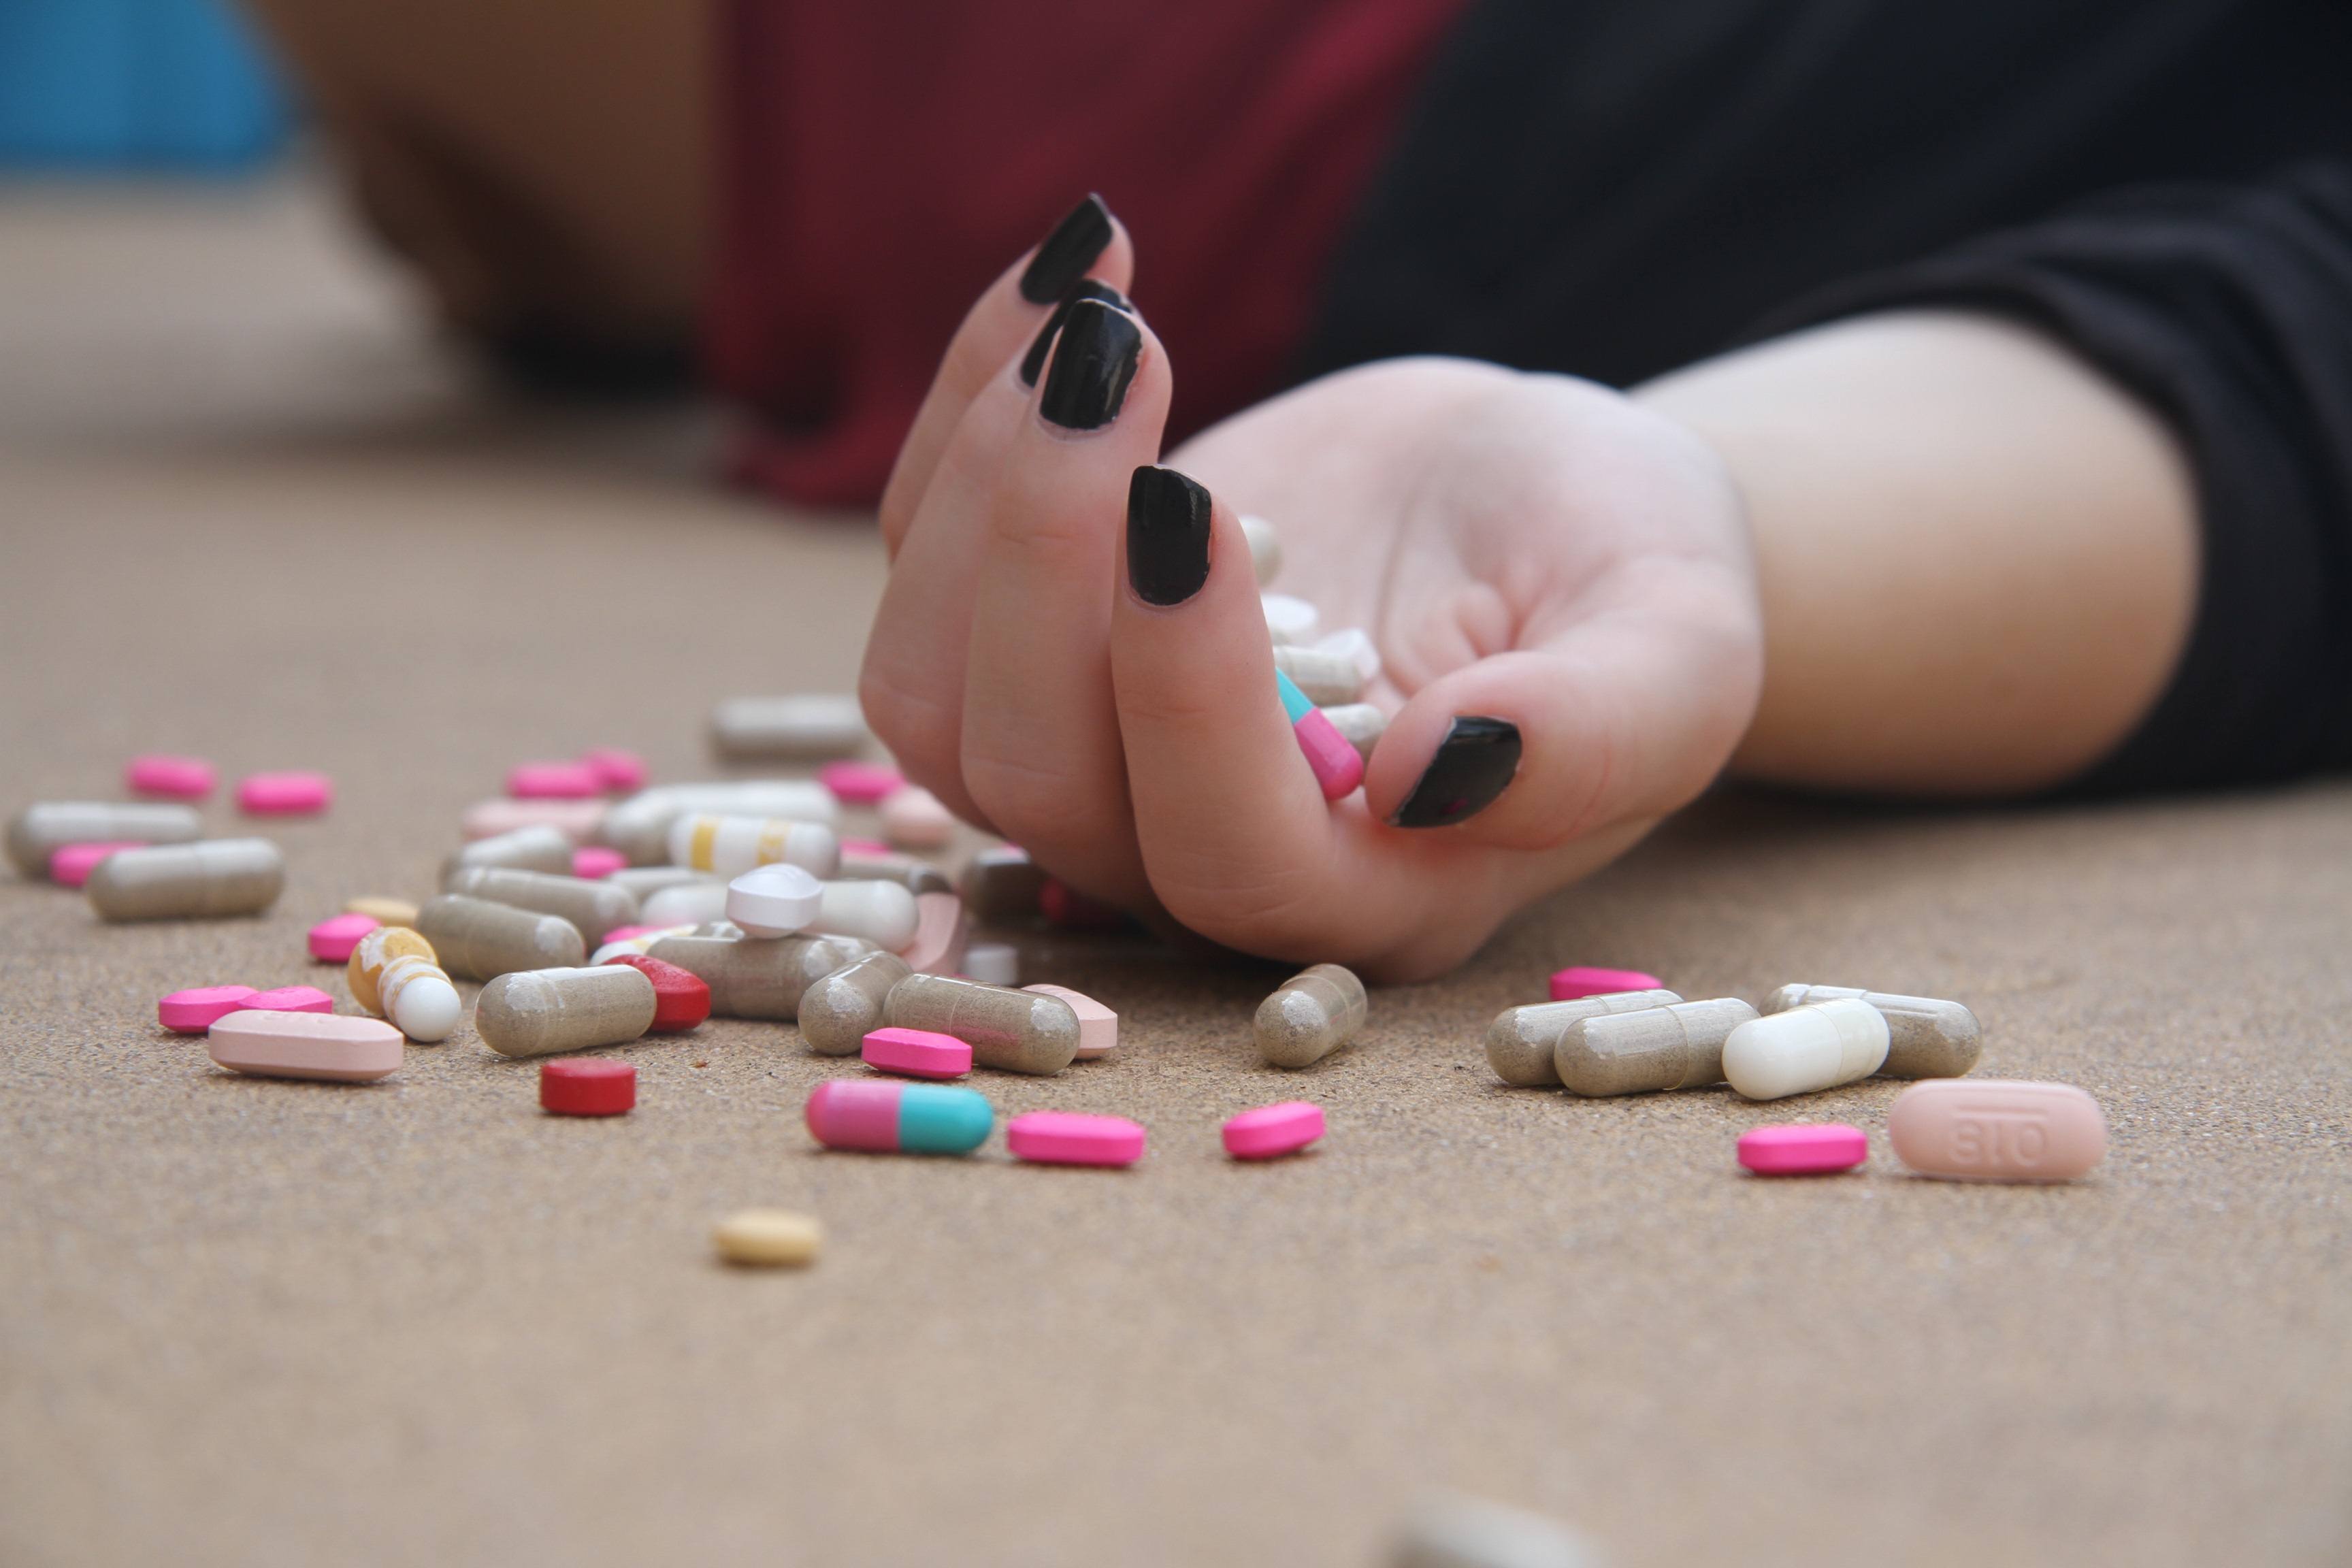 Slip afhængigheden af receptpligtig medicin med et ophold på et misbrugscenter